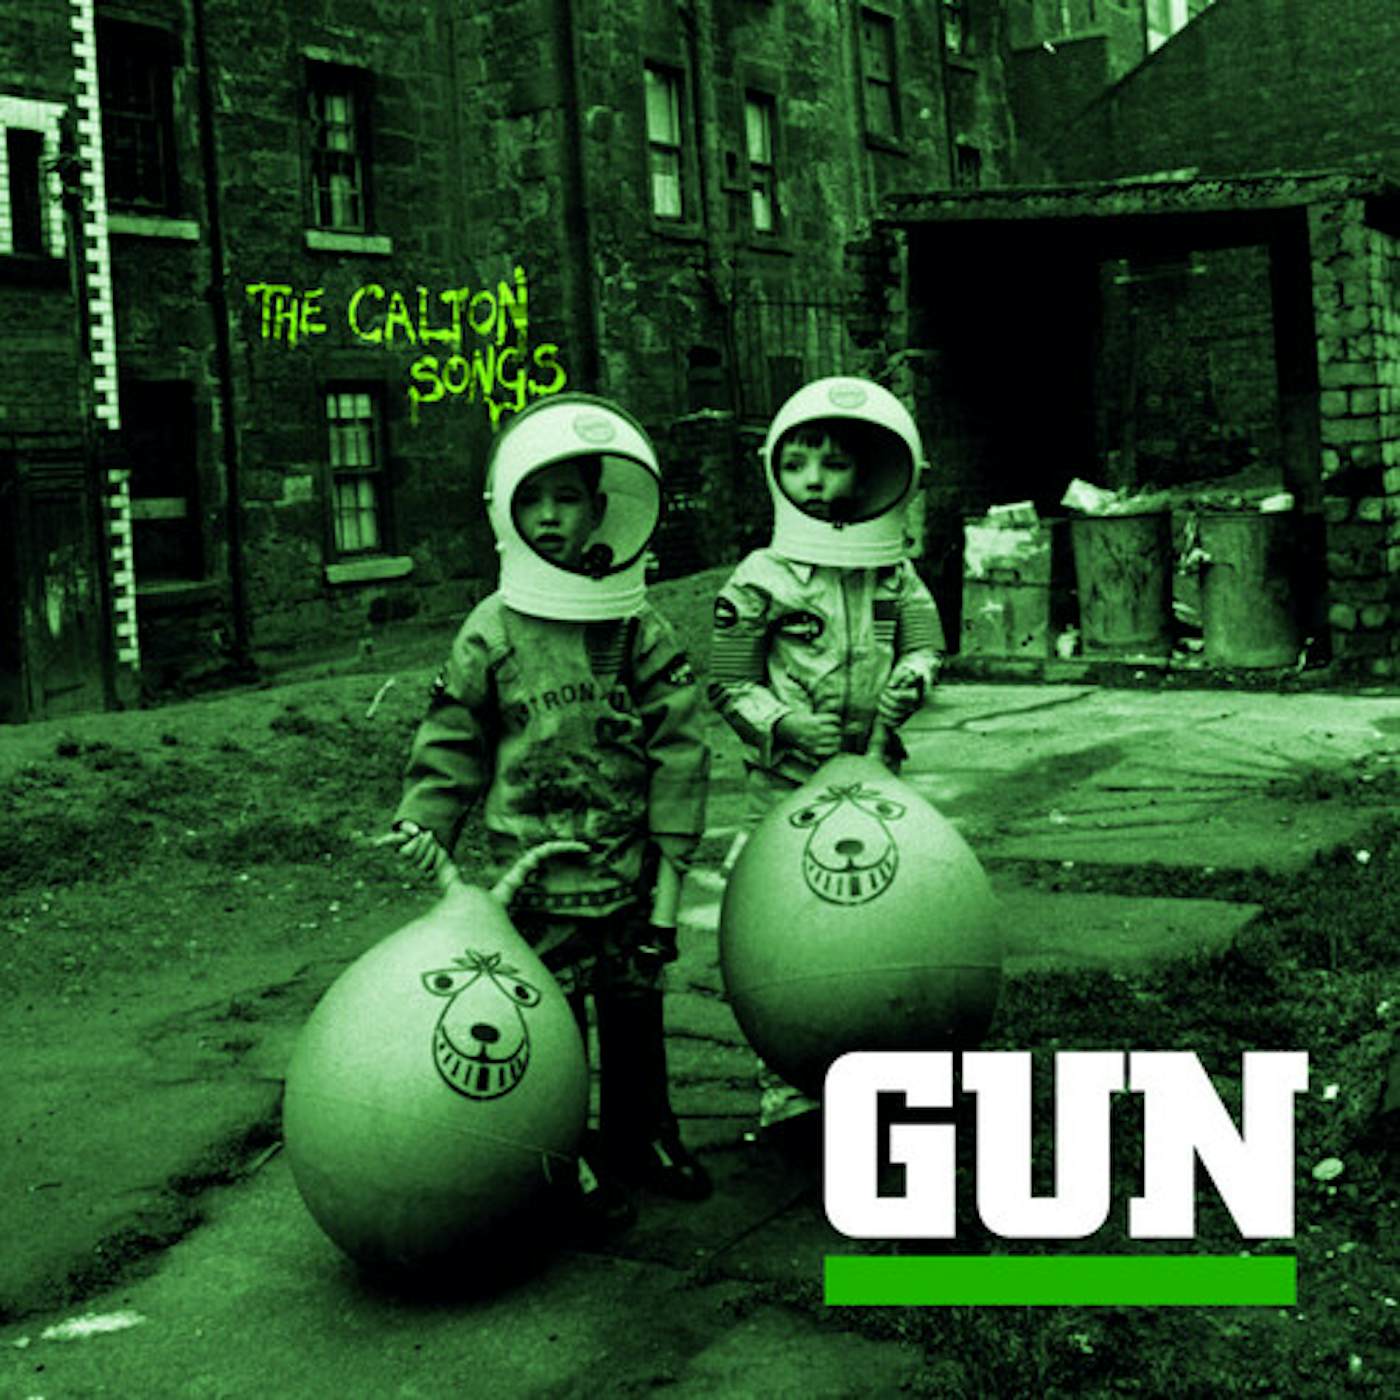 Gun CALTON SONGS CD